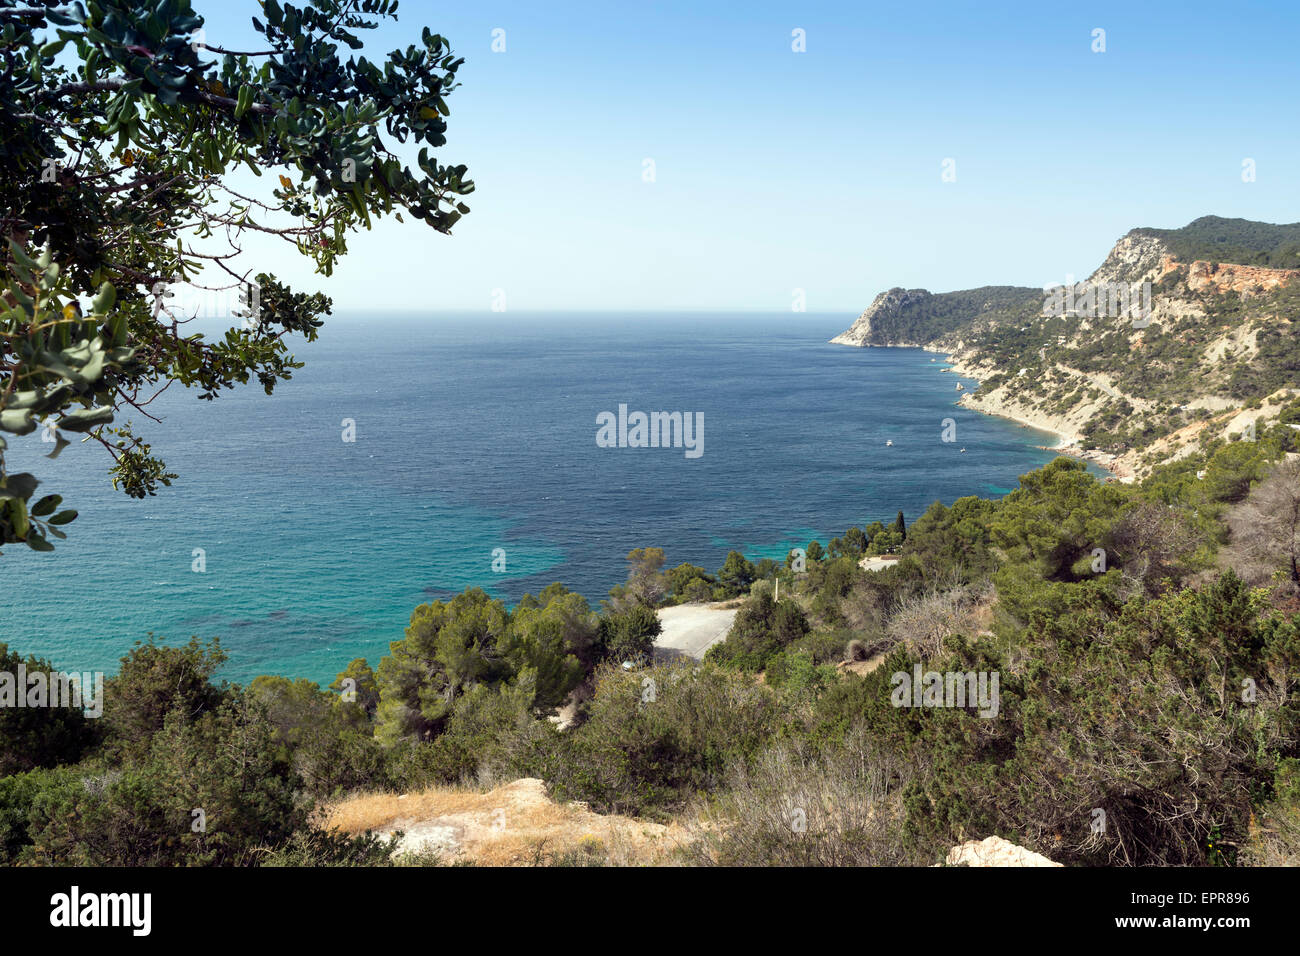 Cala d'Hort, Ibiza island, Spain Stock Photo